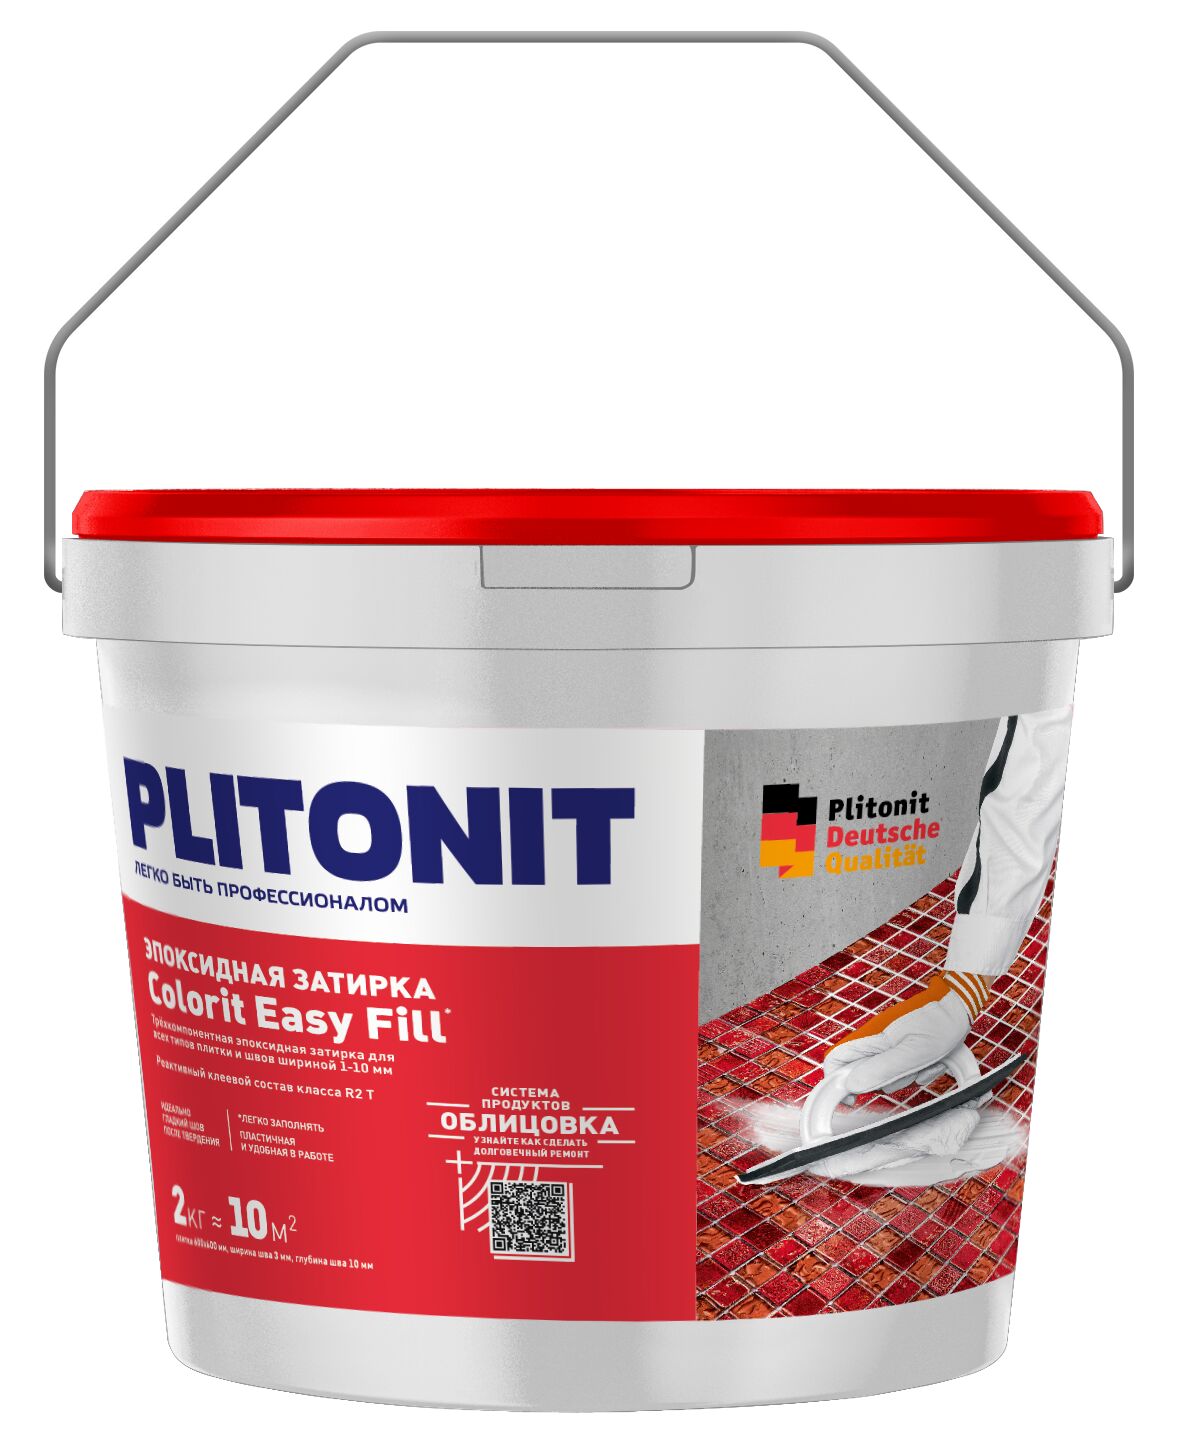 PLITONIT Colorit EasyFill БЕЛЫЙ - 2 эпоксидная затирка для межплиточных швов и реактивный клей для плитки , PLITONIT Colorit EasyFill БЕЛЫЙ - 2 эпоксидная затирка для межплиточных швов и реактивный клей для плитки 